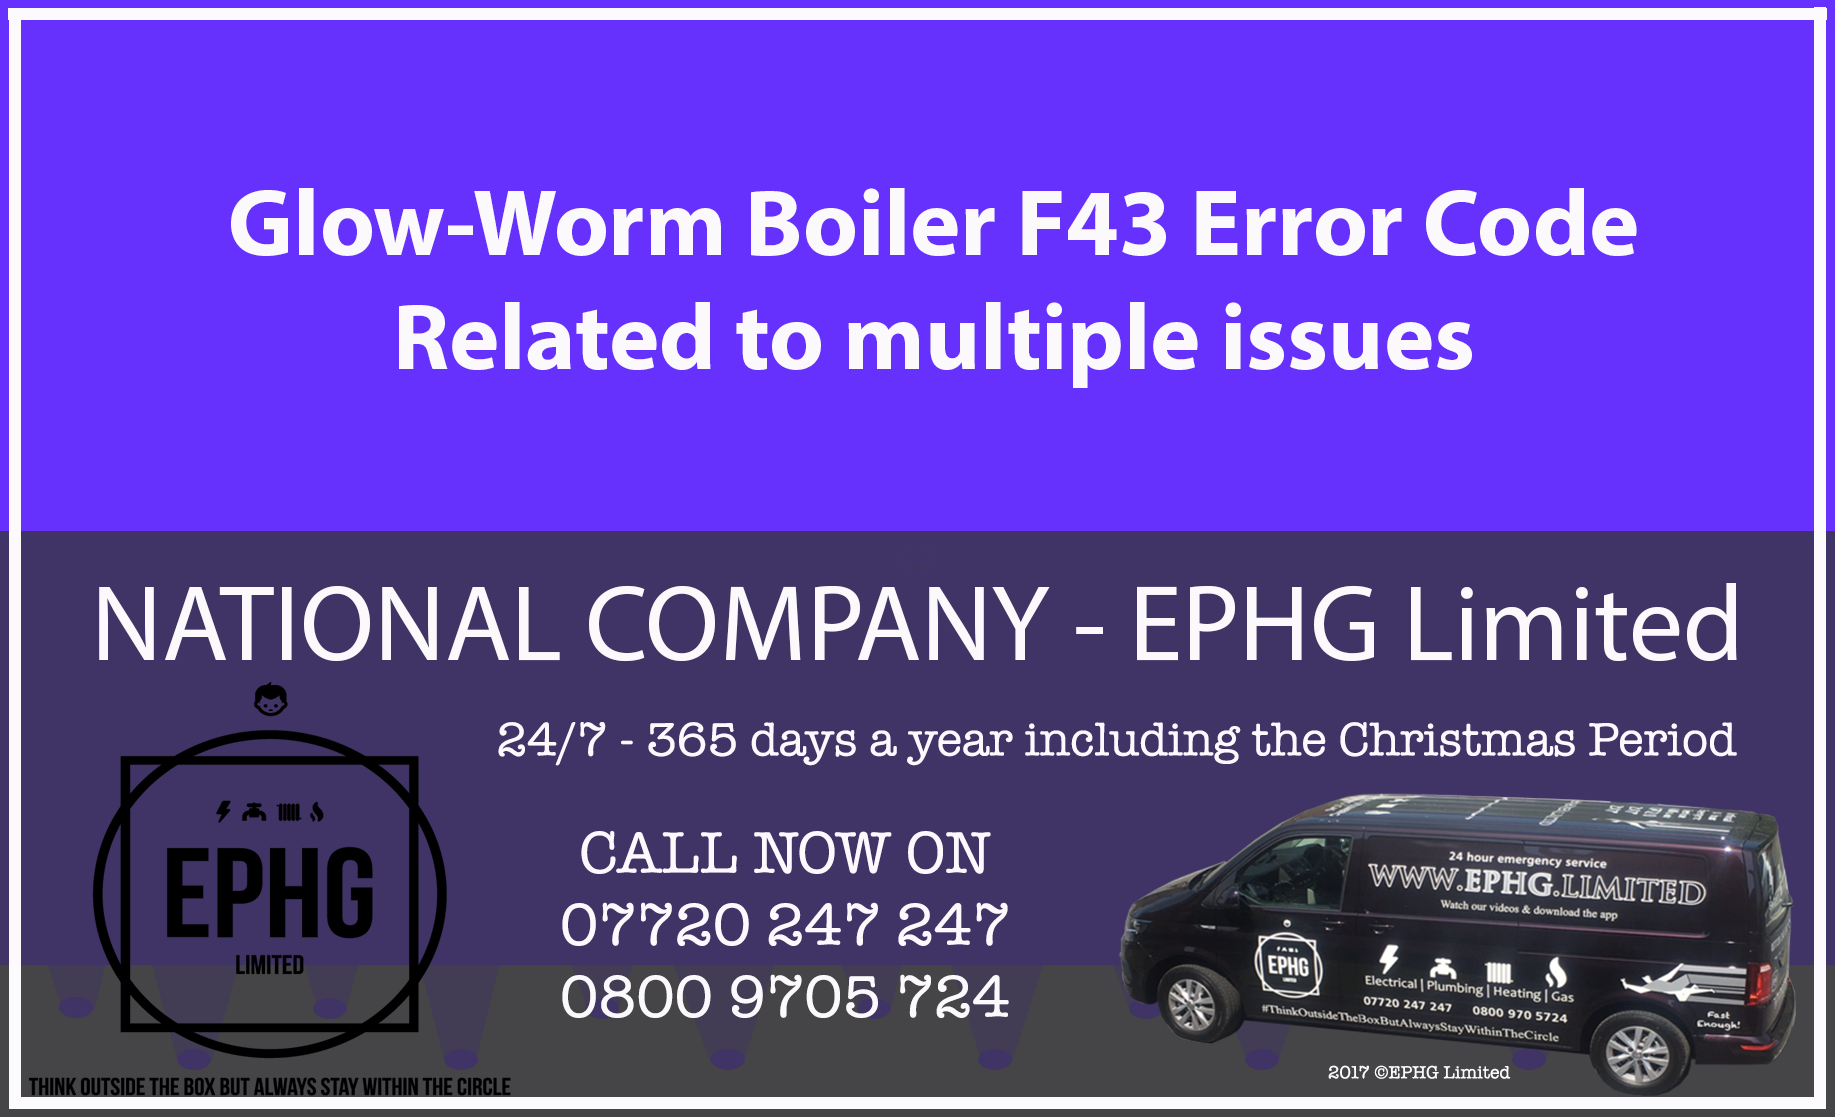 Glow-Worm boiler error code F43